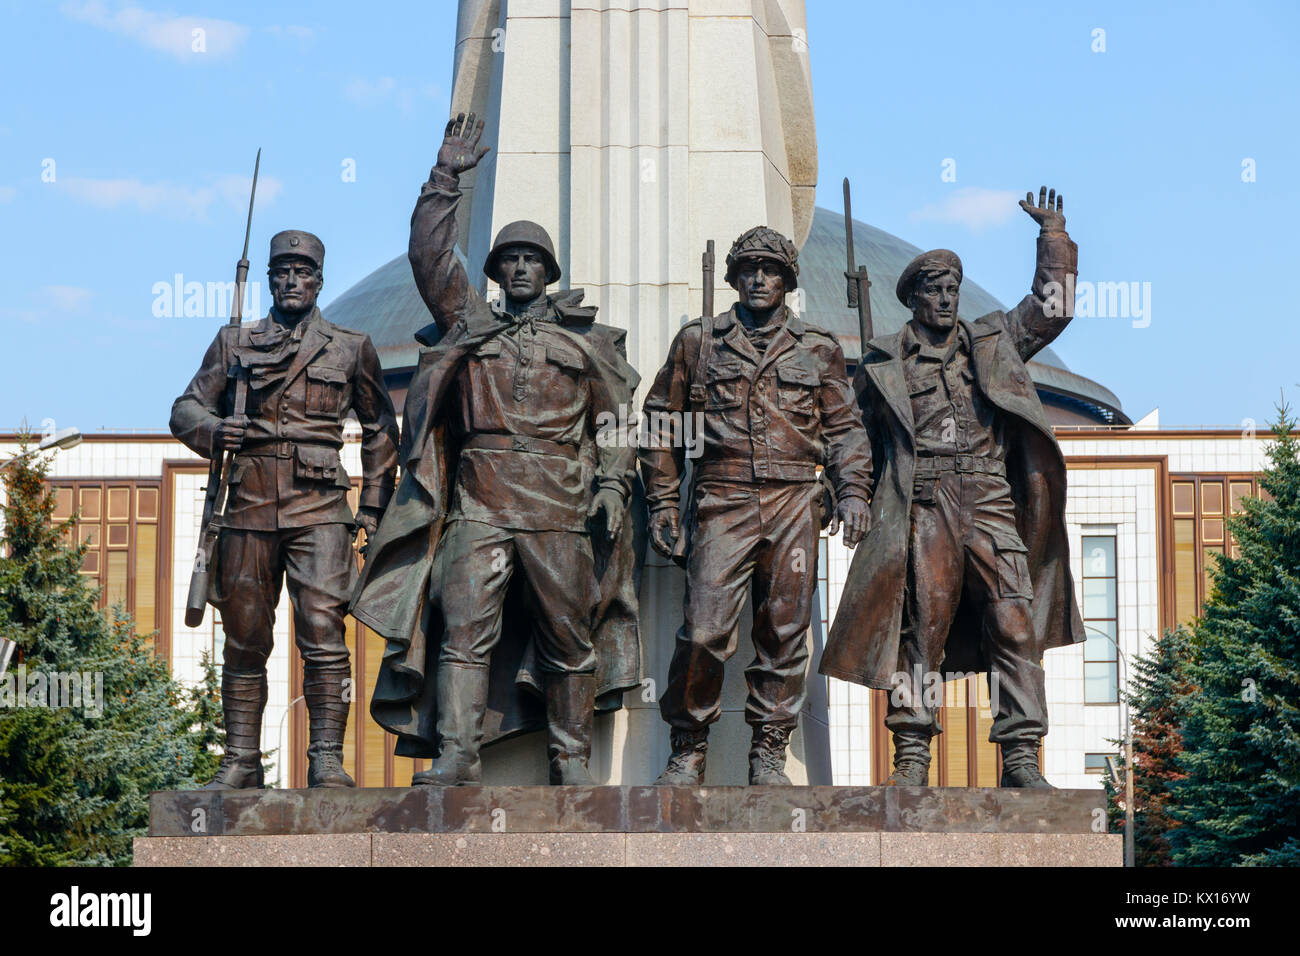 Denkmal für die Alliierten, eine Bronzestatue im Victory Park, vier WO2 Soldaten der alliierten Nationen. Moskau, Russland. Stockfoto